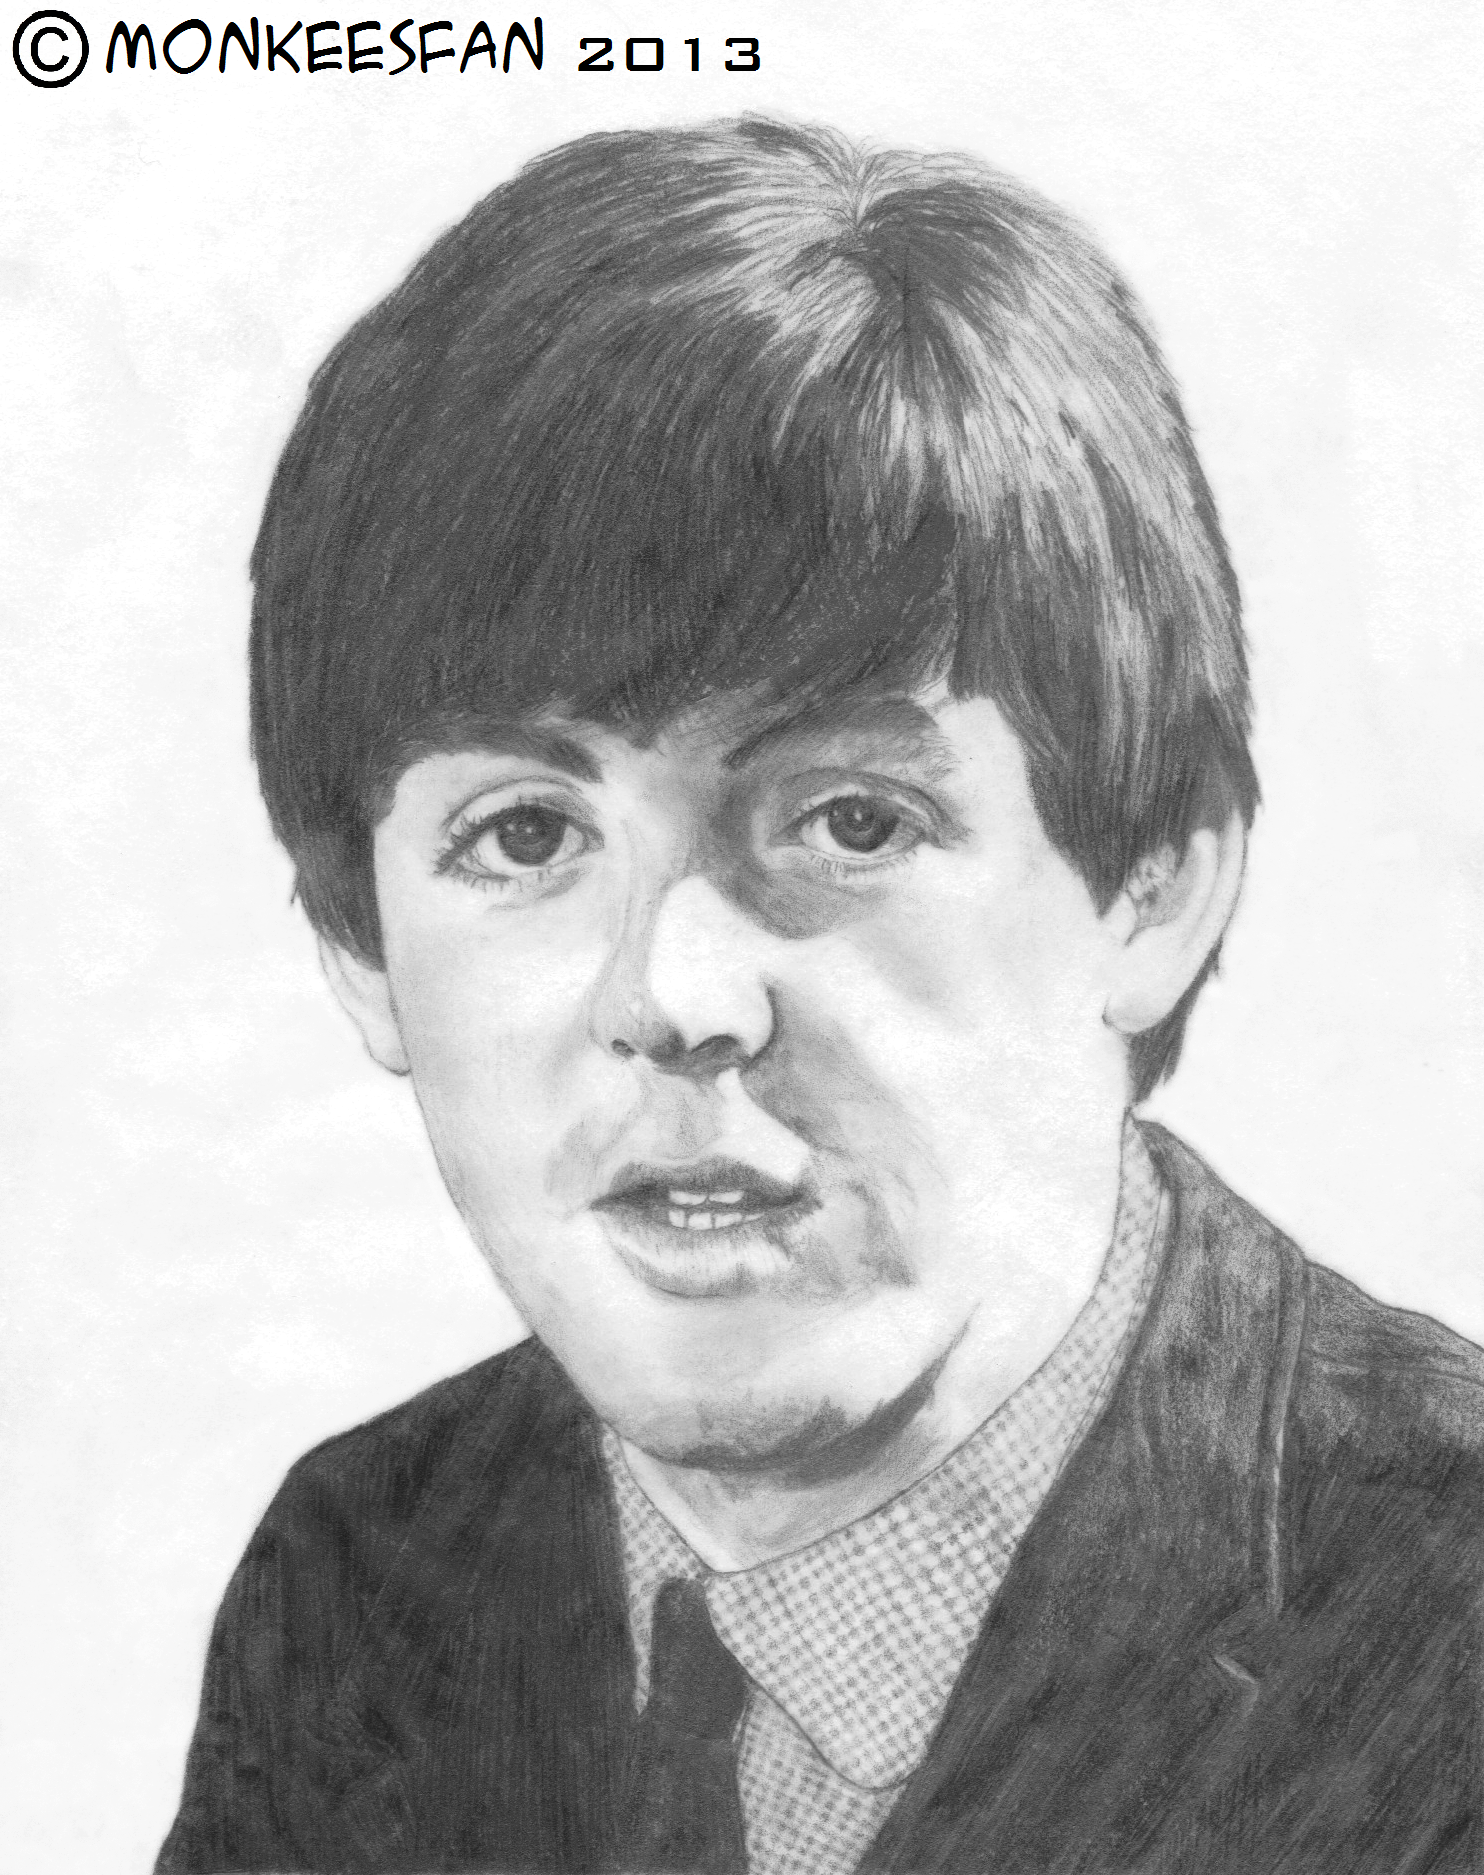 Paul McCartney, 1964